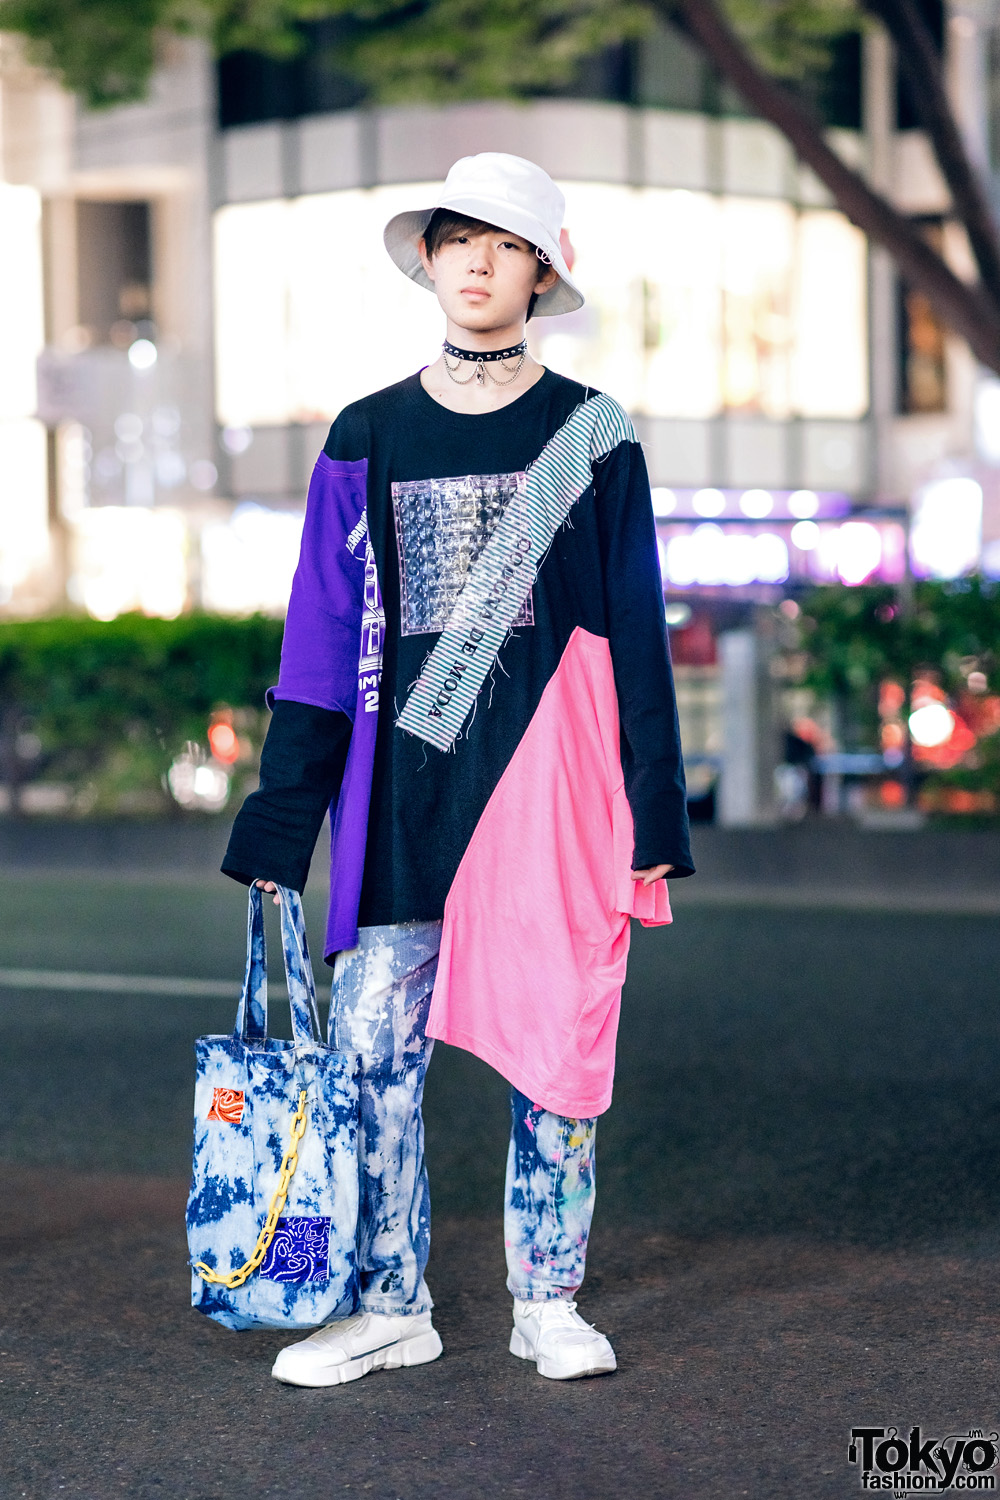 Harajuku Street Fashion w/ Spinns Bucket Hat, Codona De Moda Asymmetrical Sweatshirt, Tie Dye Pants & Sneakers